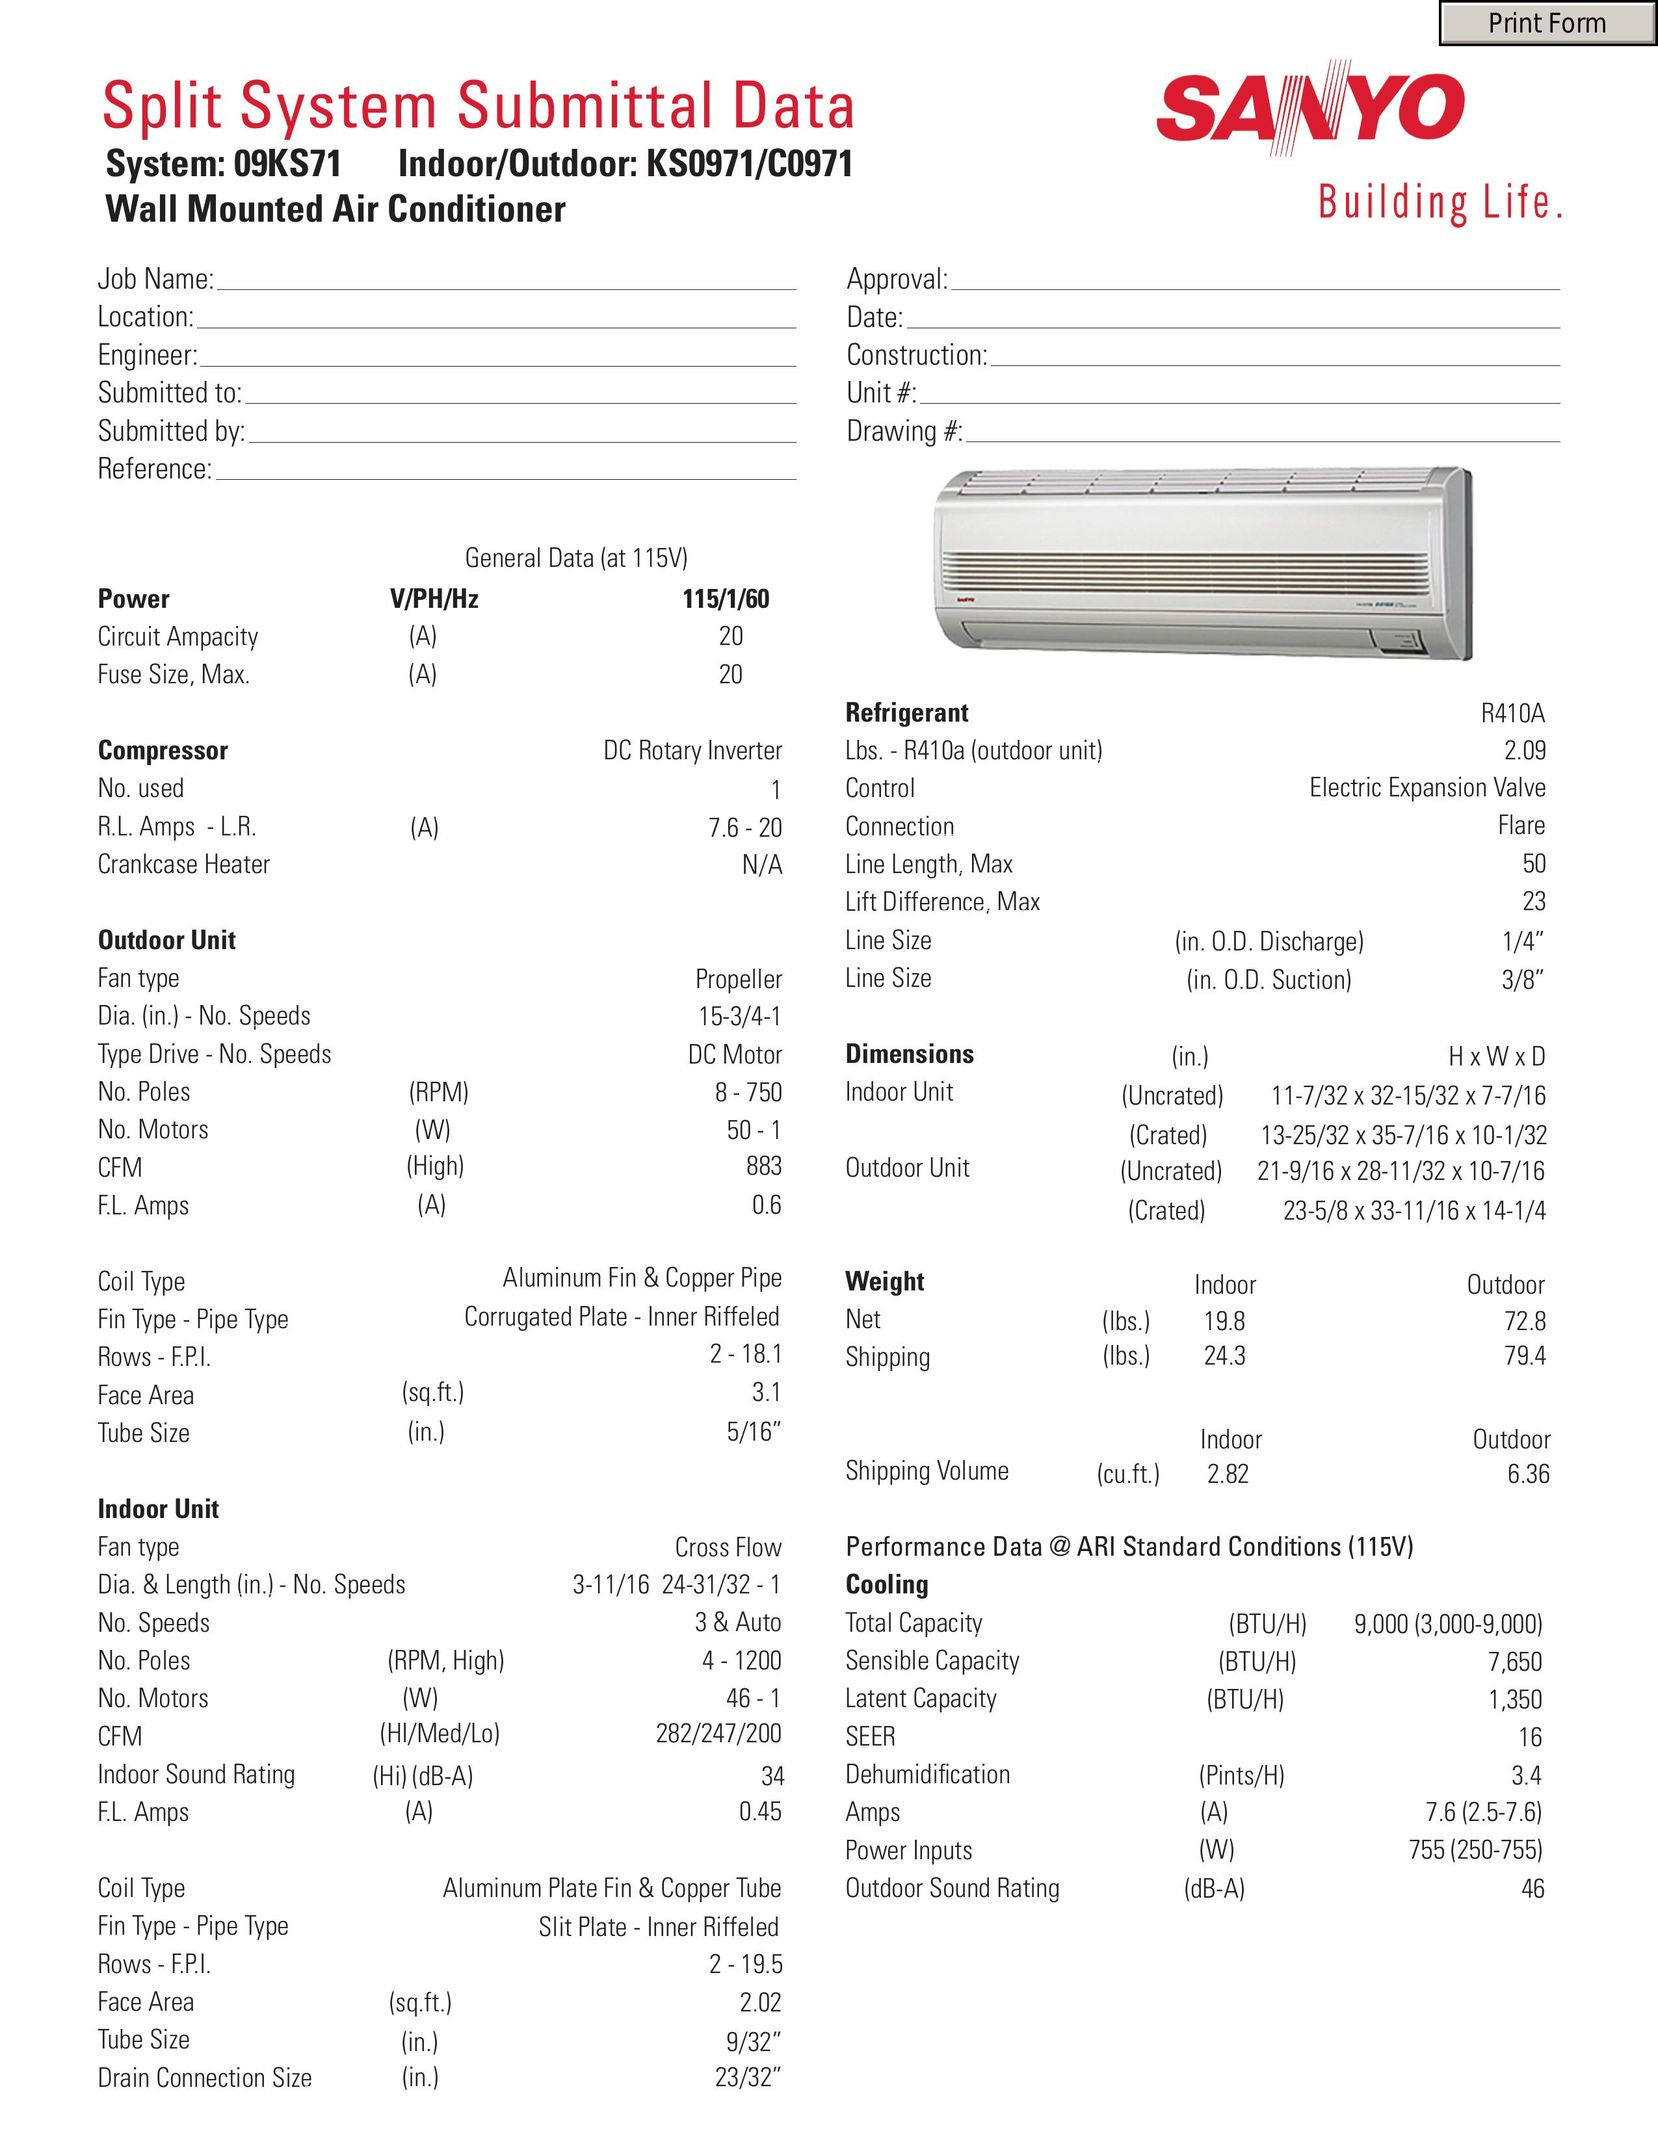 Sanyo 09KS71 Air Conditioner User Manual